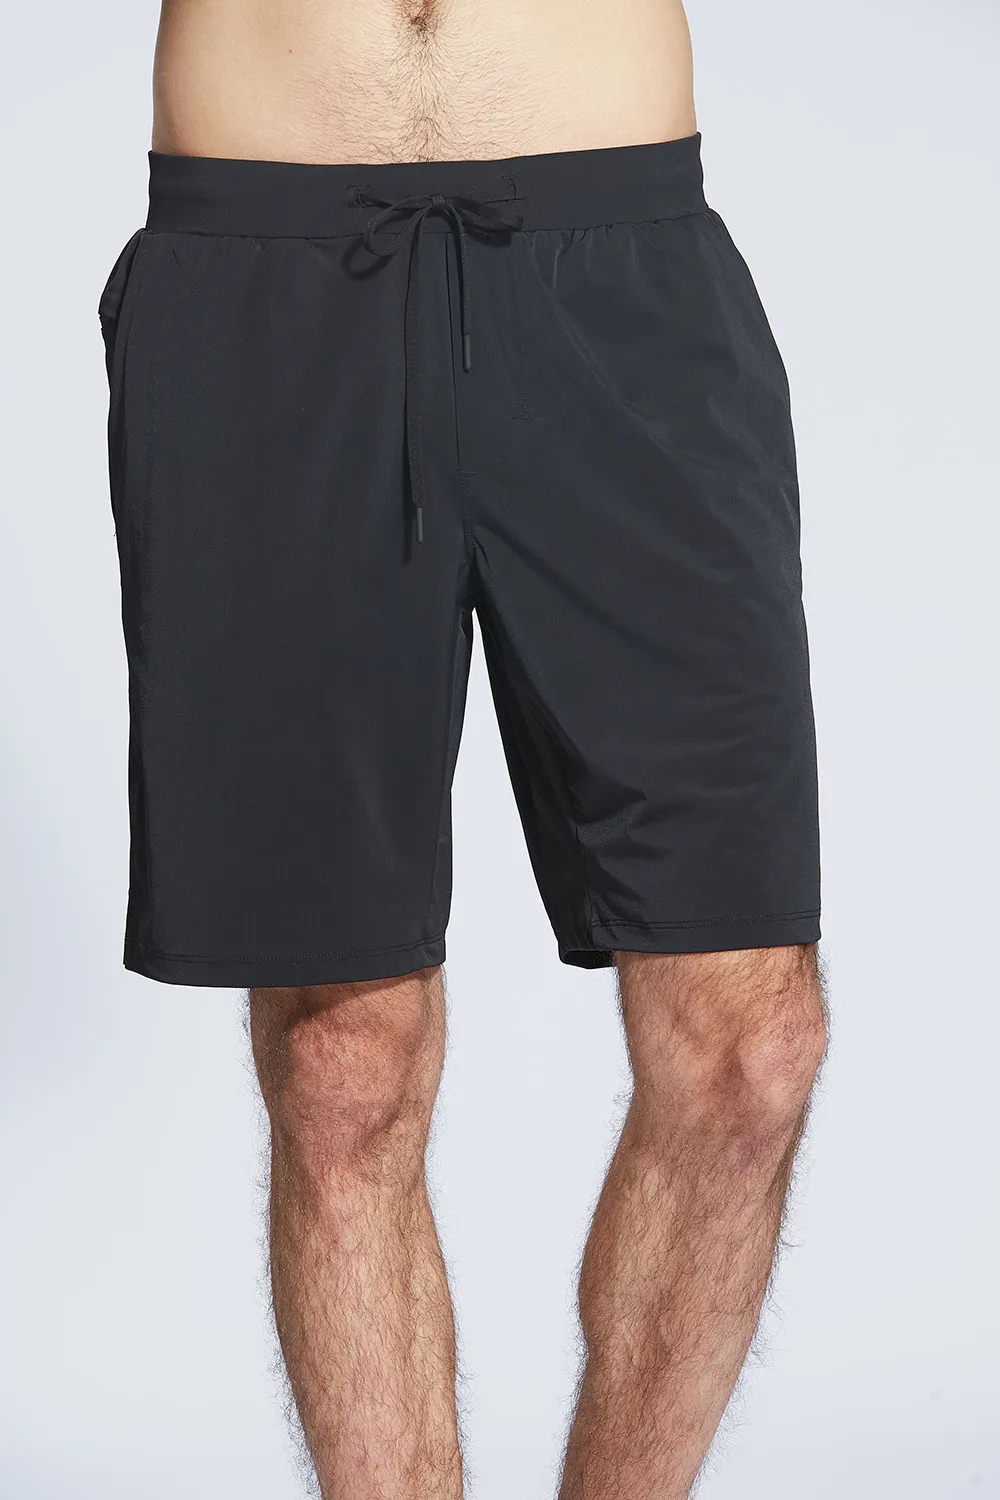 Fitness-Fitness-Kleidung LU-25 Herren Shorts Sports Laufende Fünf-Punkt-Hosen Schnelltrocknendes leichte Stretch Sommer